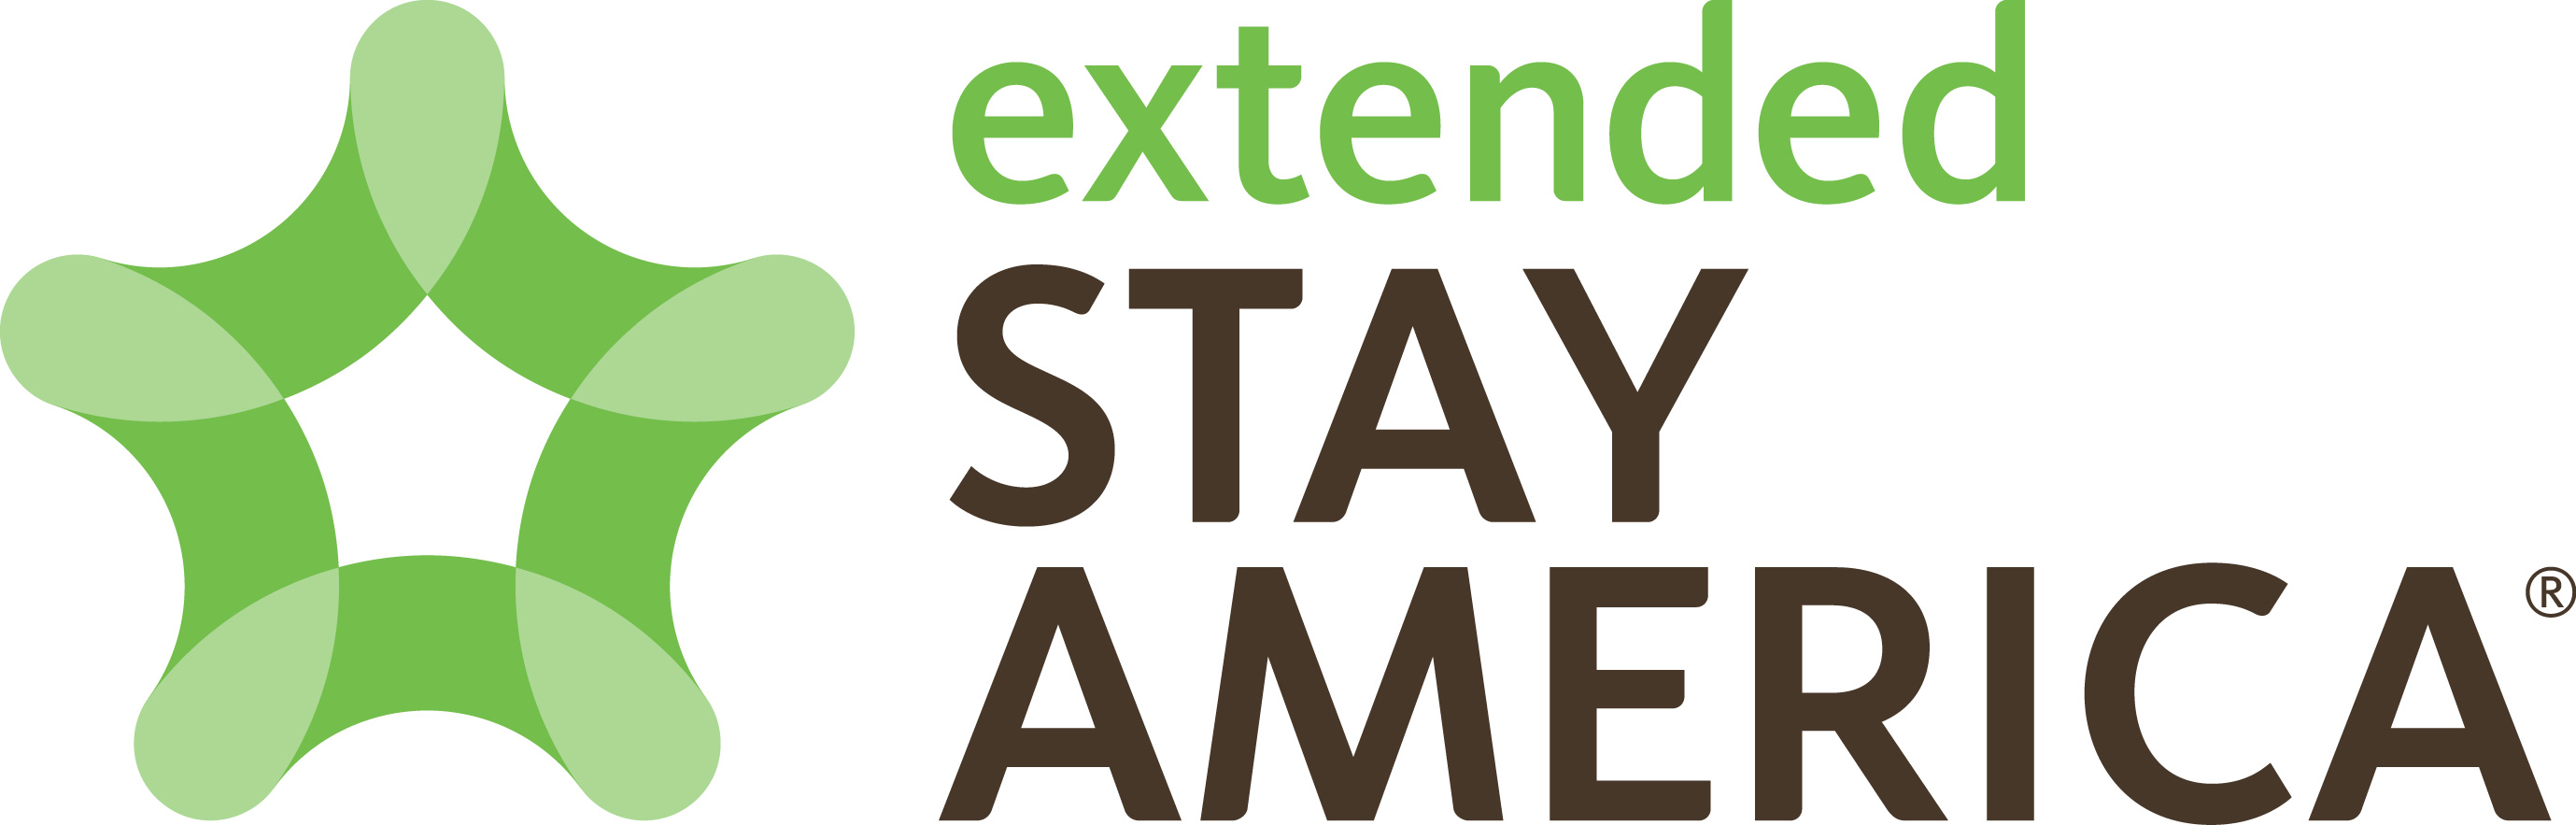 Extended Stay America ilmoittaa 20 %:n kasvun franchising-portfoliossaan